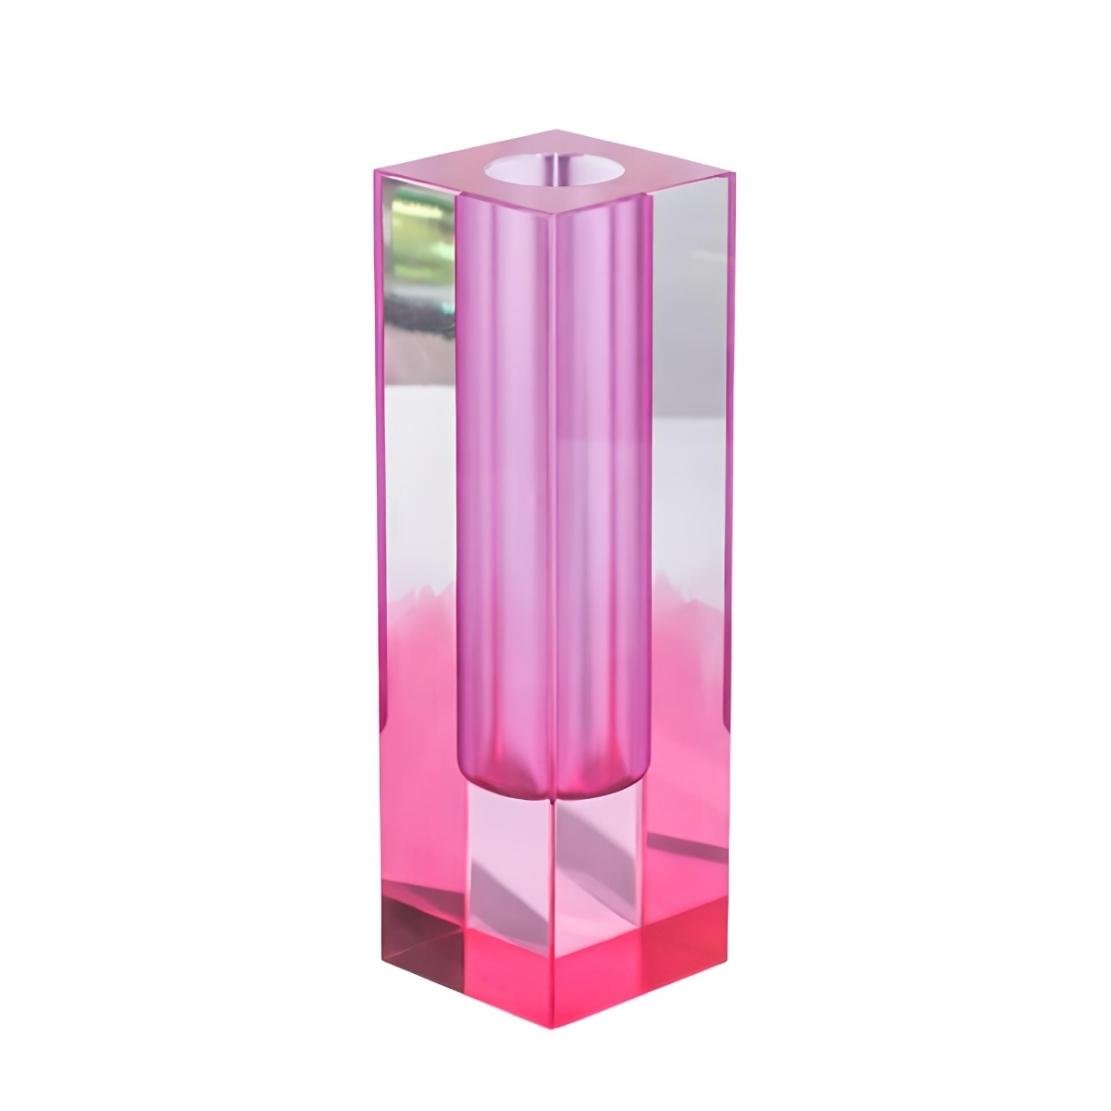 Gradient pink decorative acrylic vase